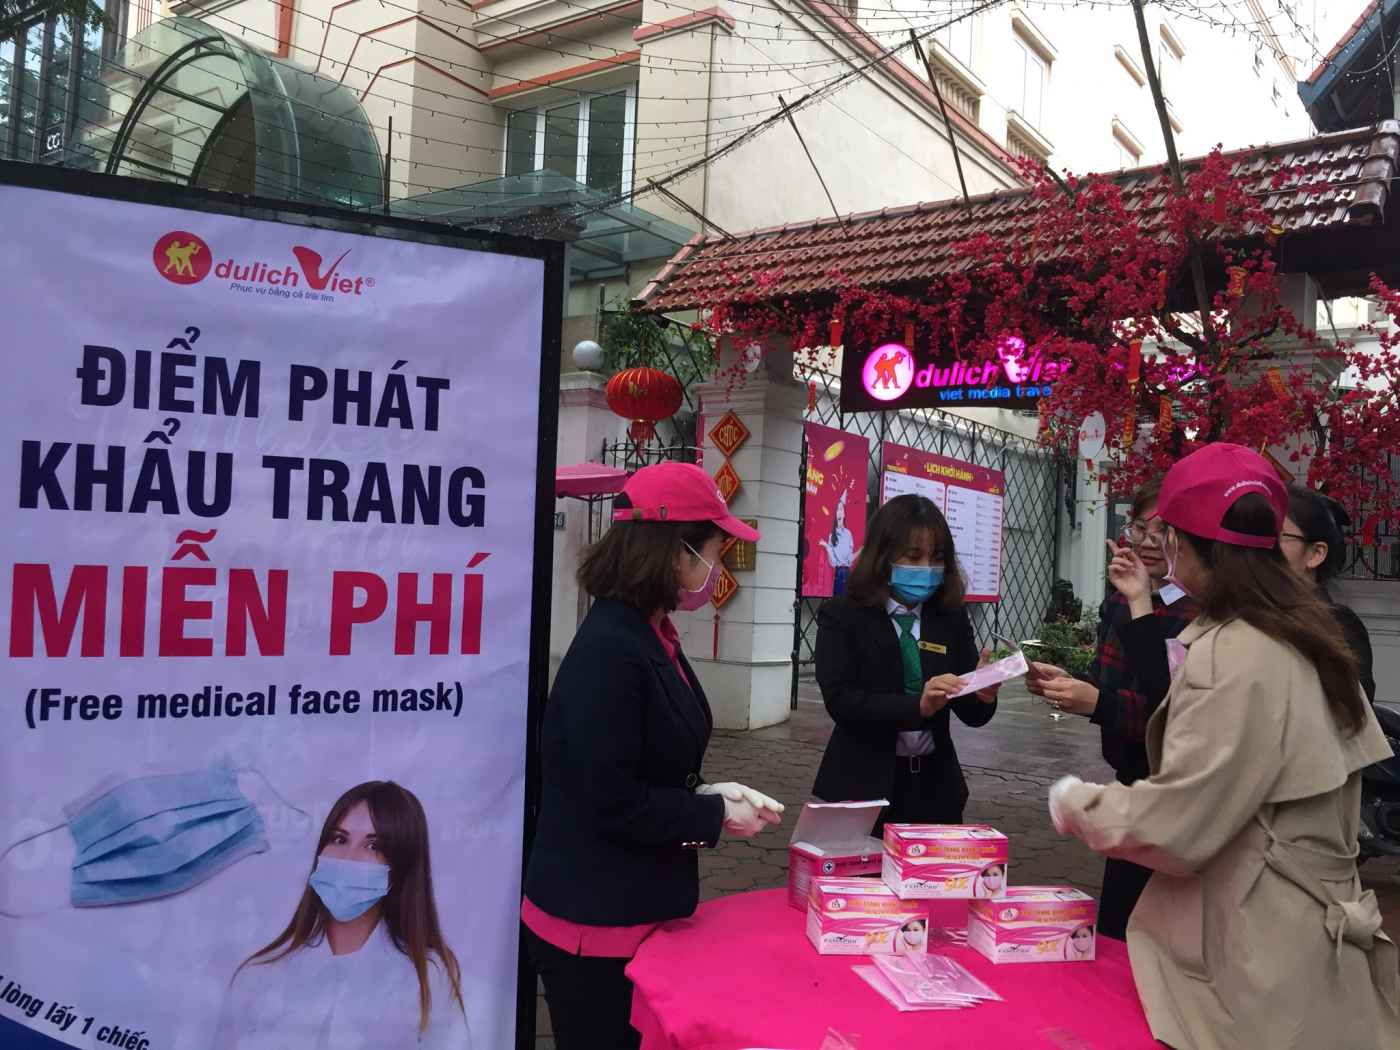 Du lịch Việt đồng hành cùng cộng đồng xã hội trong cuộc chiến phòng dịch bệnh do virus Corona